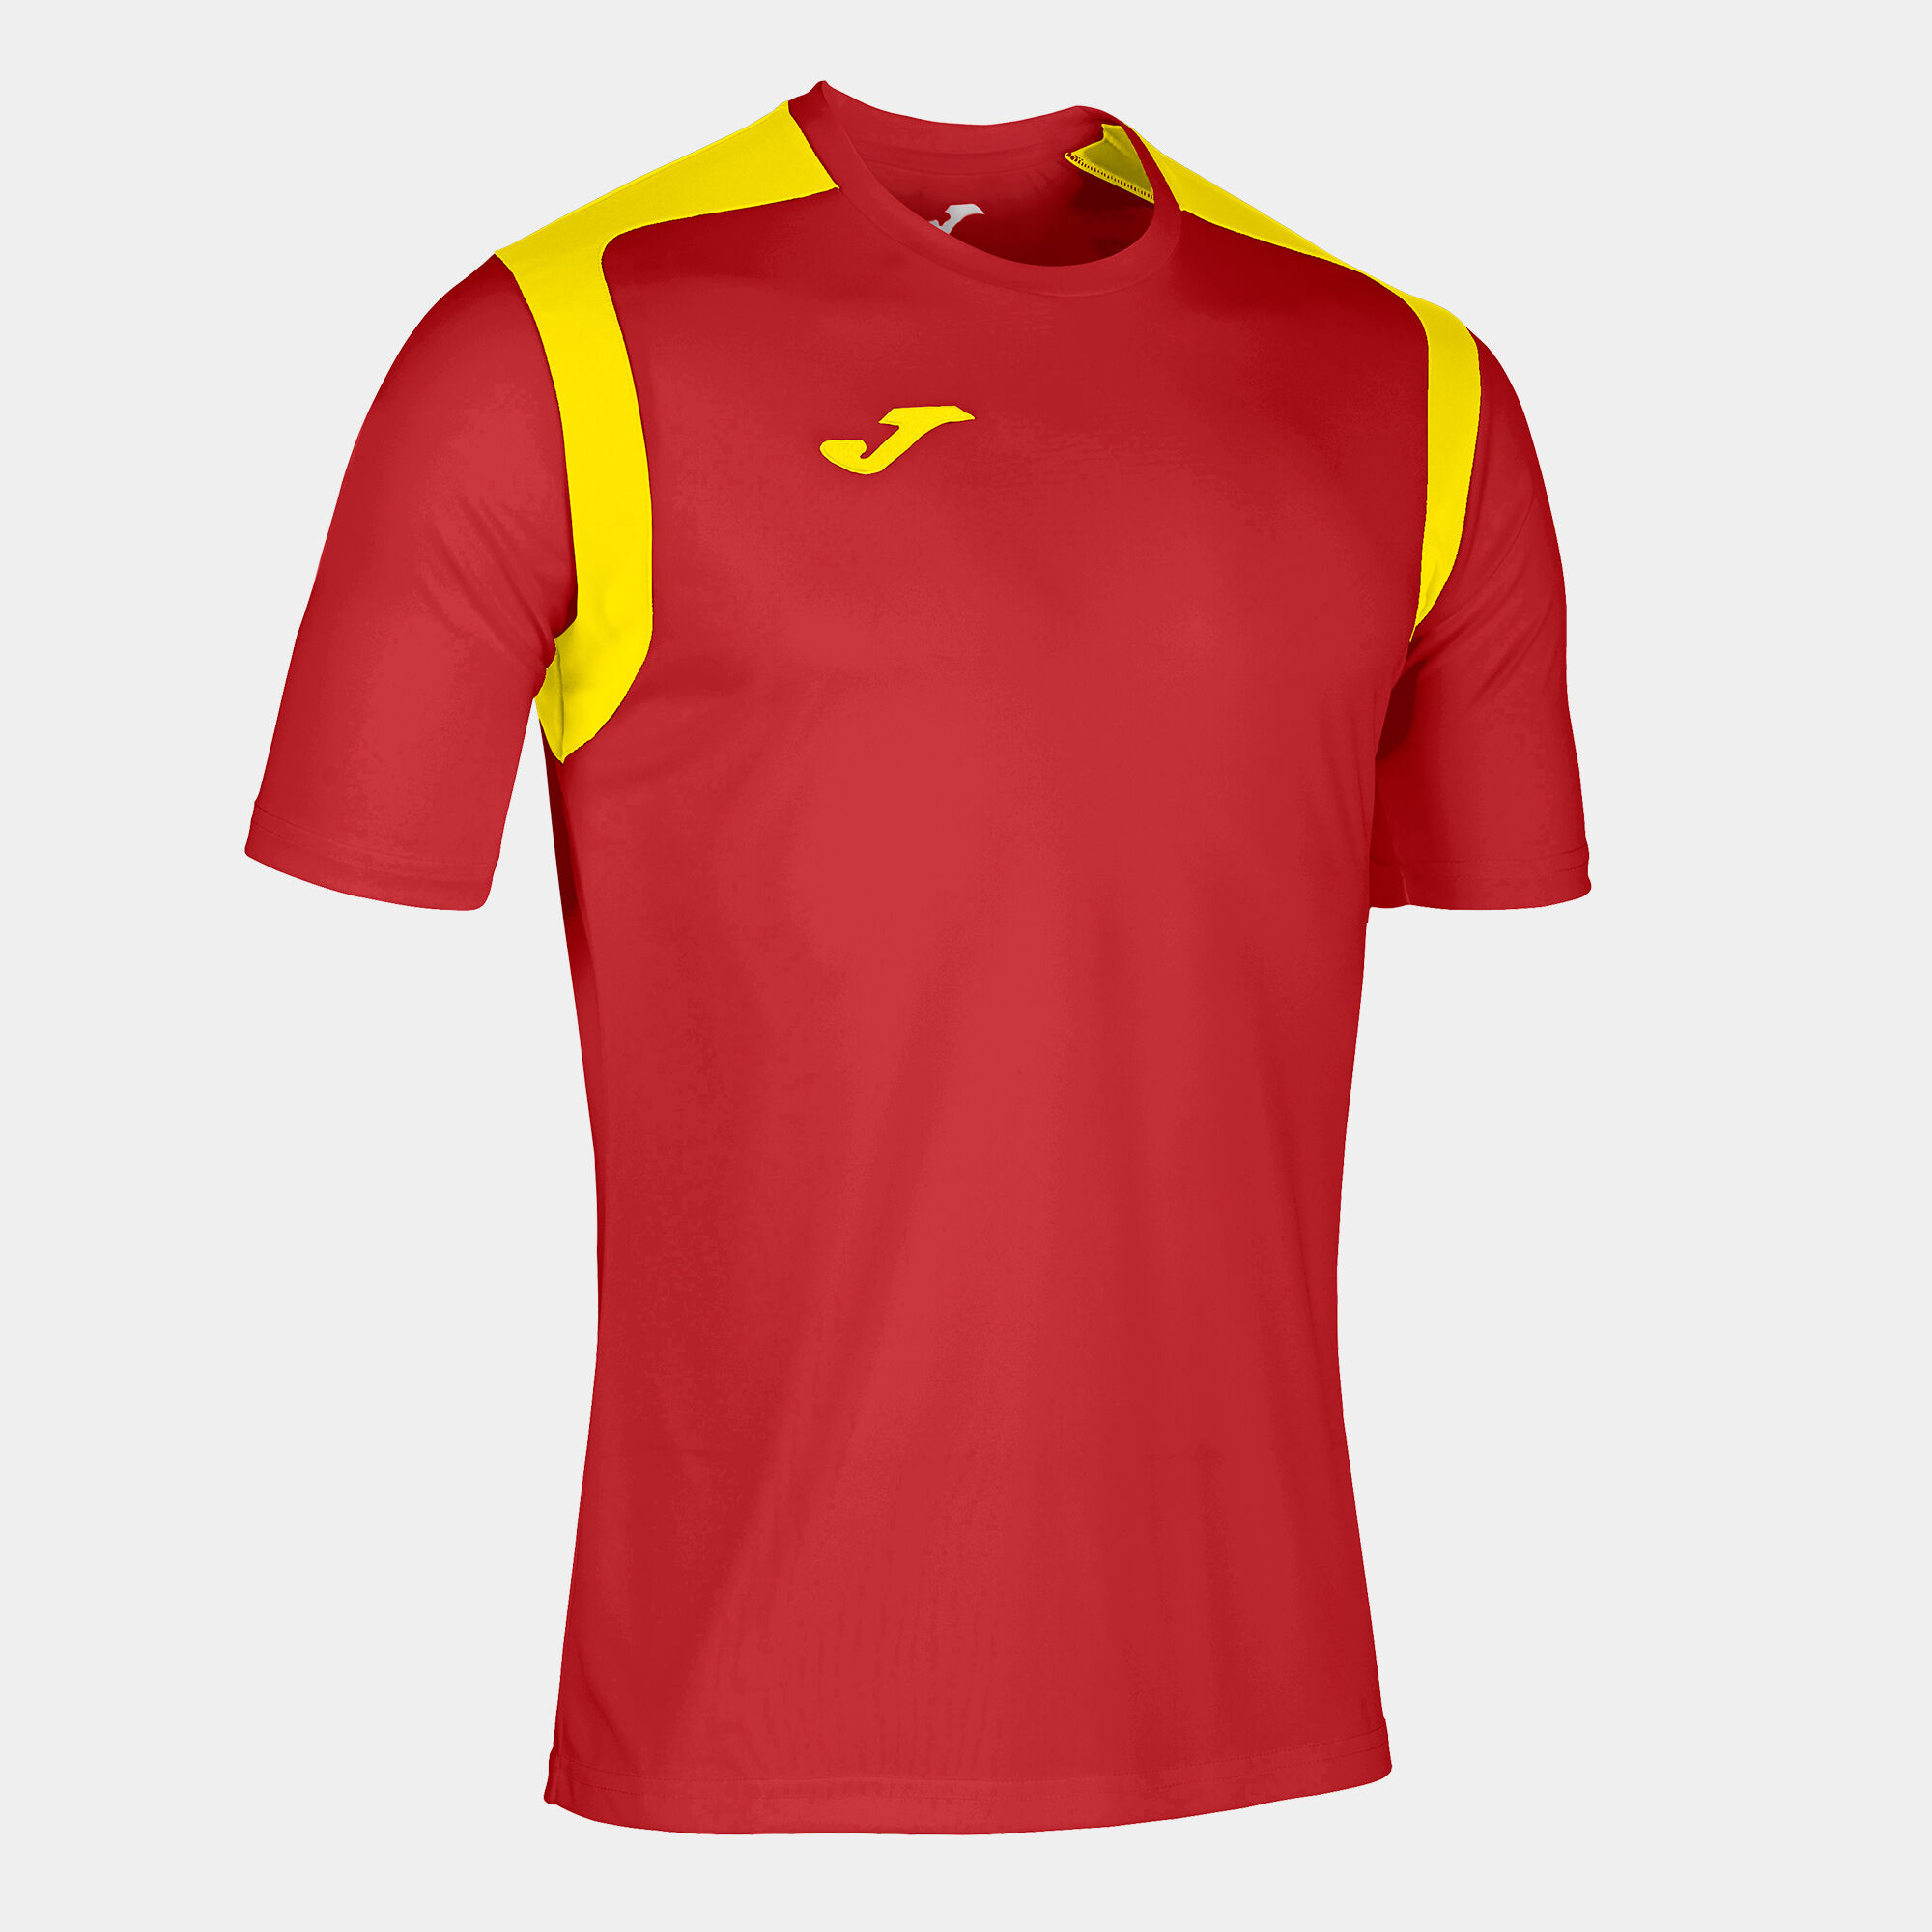 T-shirt manga curta homem Championship V vermelho amarelo